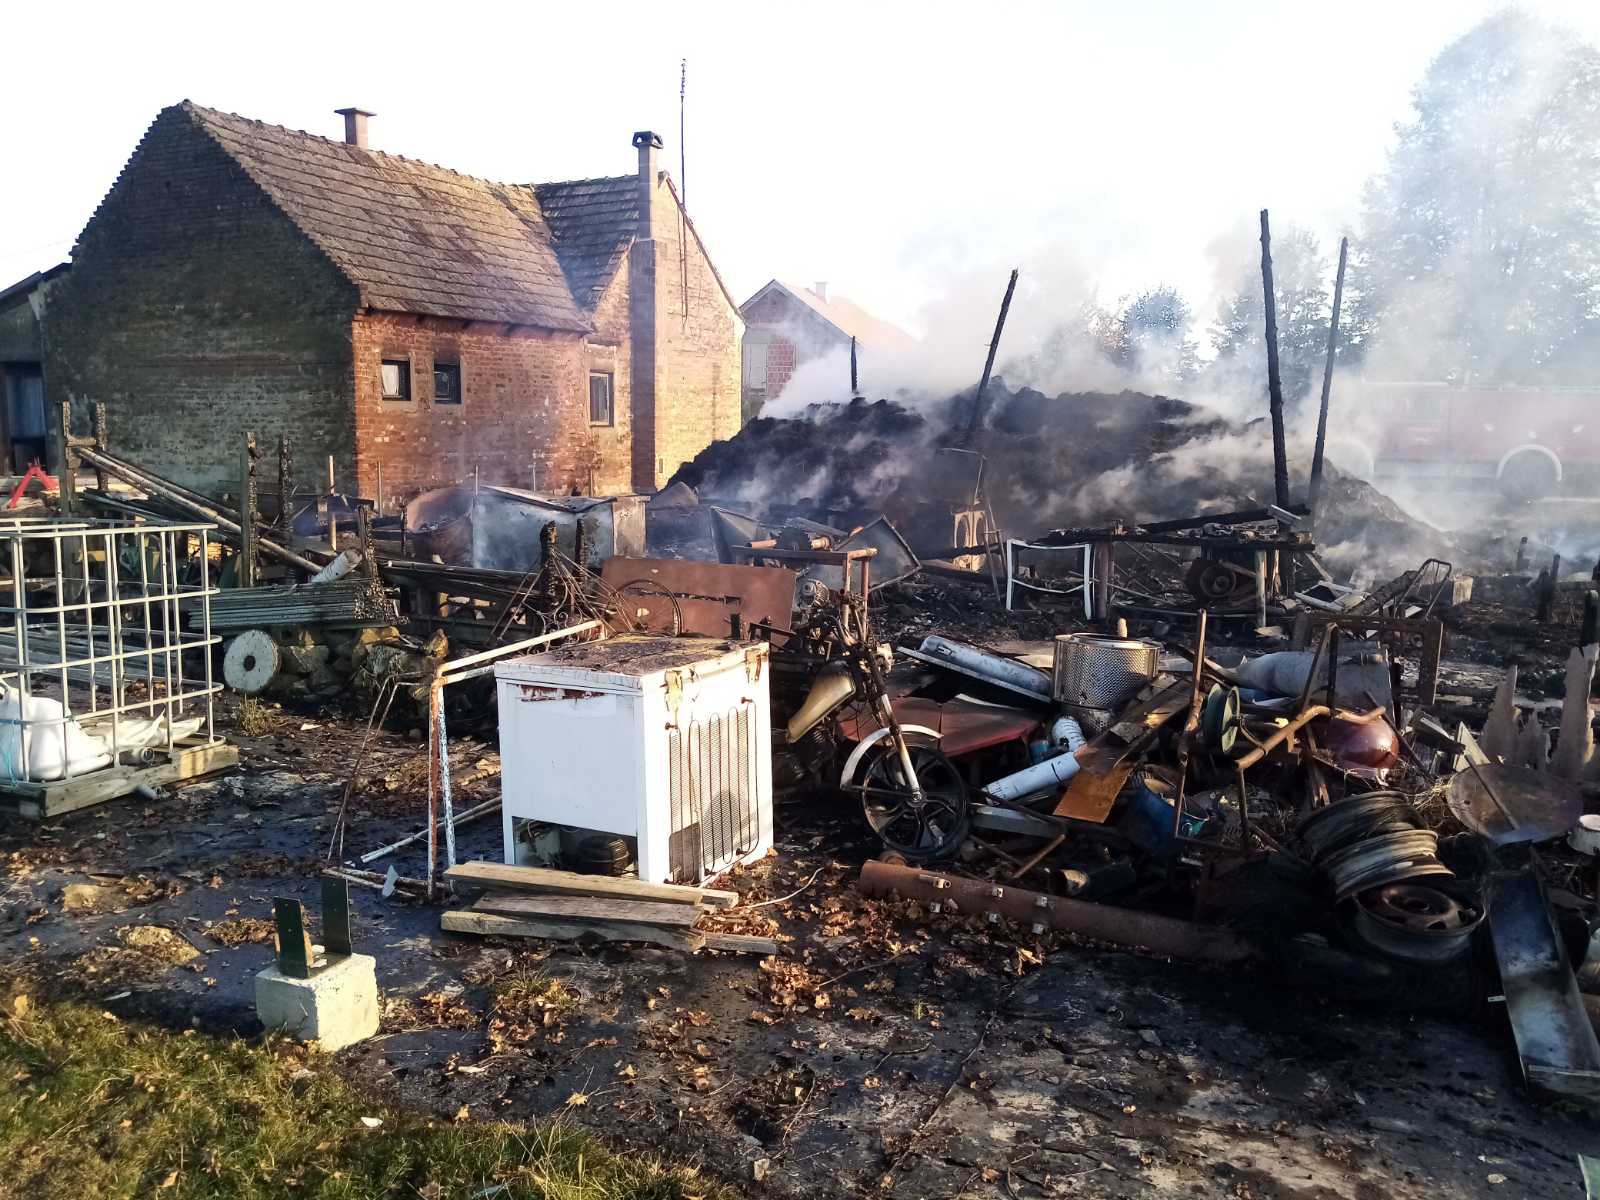 Požega.eu | Tužna nedjelja u čaglinskom kraju: Vatrena stihija u Vlatkovcu progutala štagalj, traktor i radne strojeve - vatrogasci spriječili širenje vatre na obiteljsku kuću /FOTO/